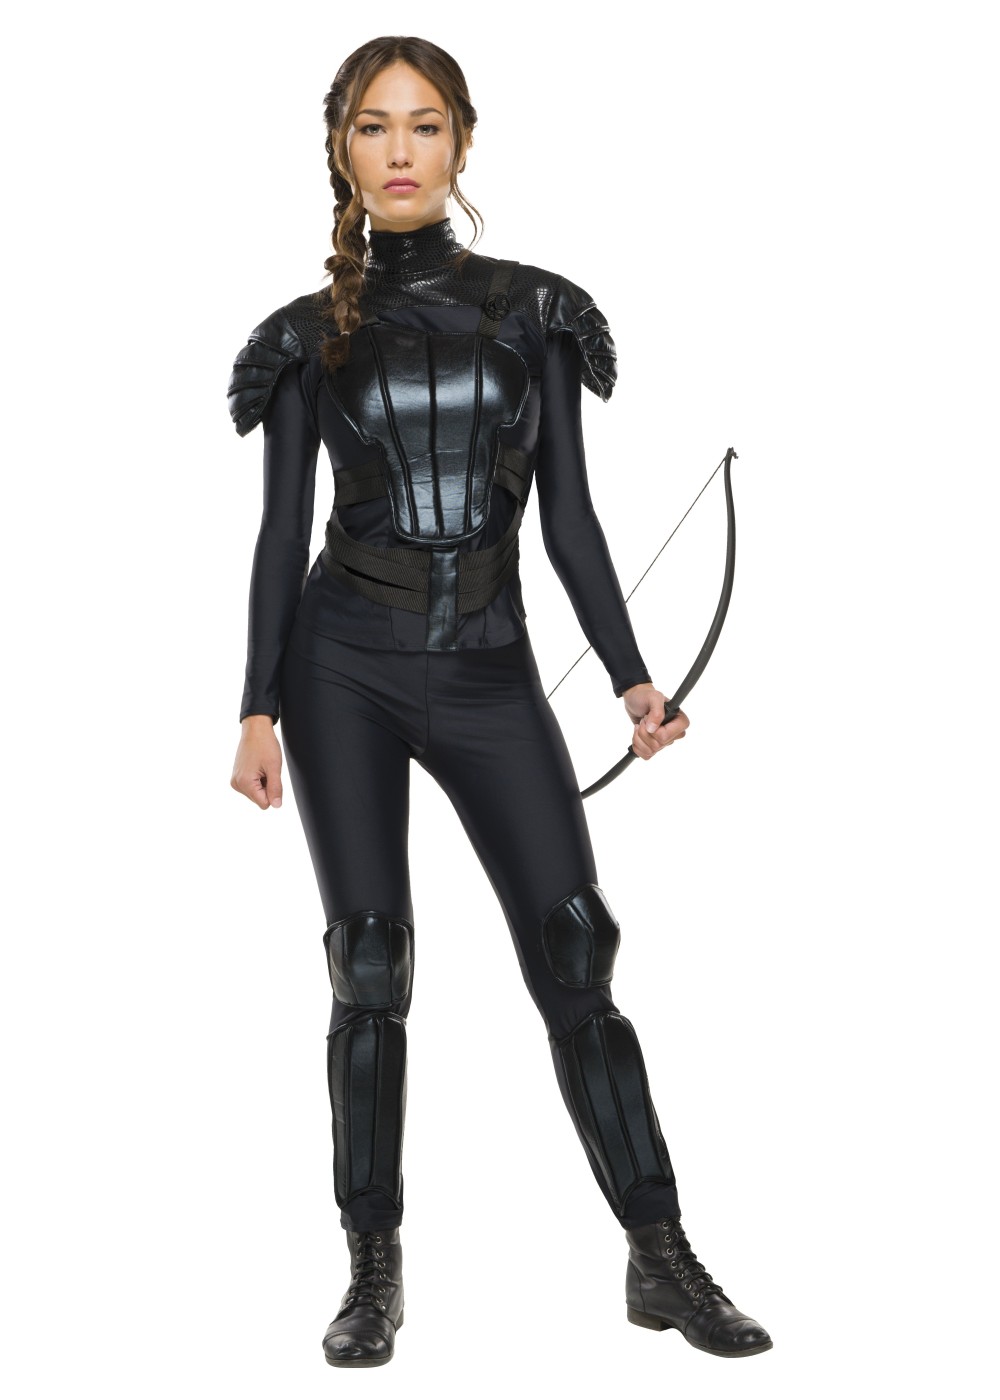 Hunger Games Mockingjay Part 2 Katniss Everdeen Costume